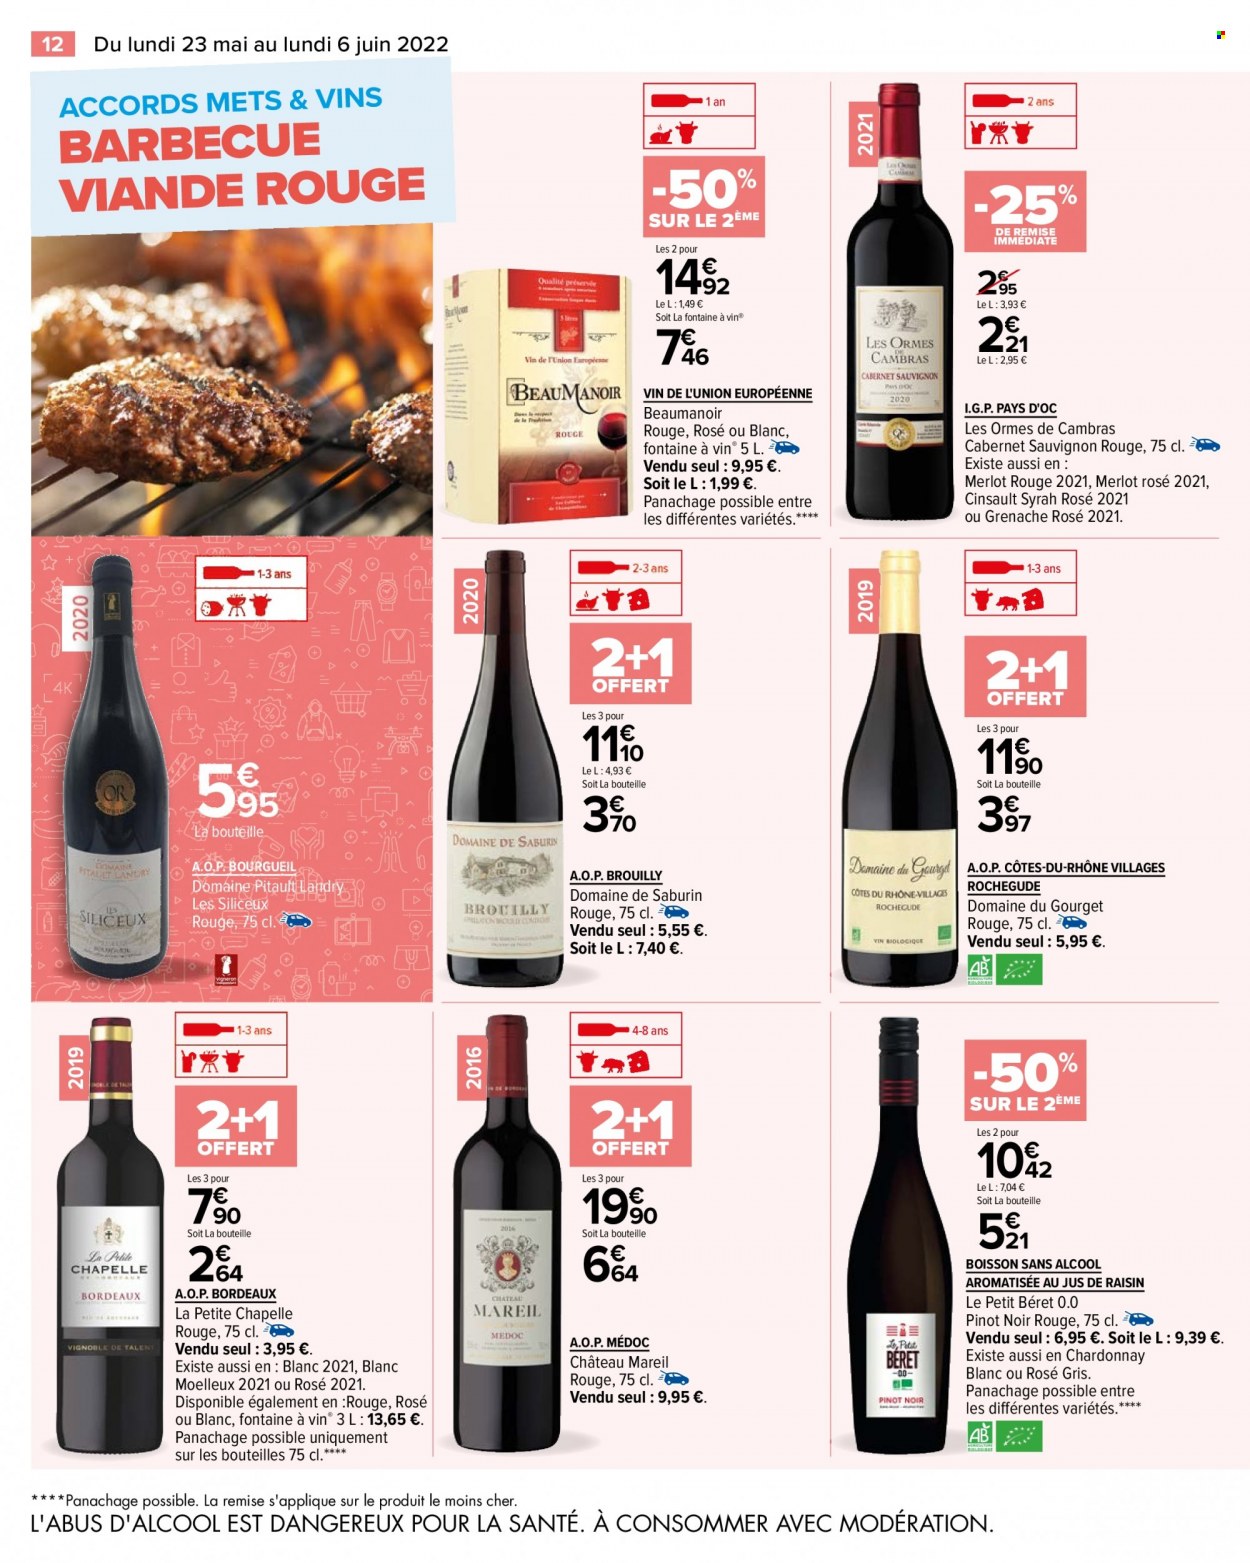 thumbnail - Catalogue Carrefour Hypermarchés - 23/05/2022 - 06/06/2022 - Produits soldés - Bordeaux, vin blanc, Cabernet Sauvignon, barbecue. Page 16.